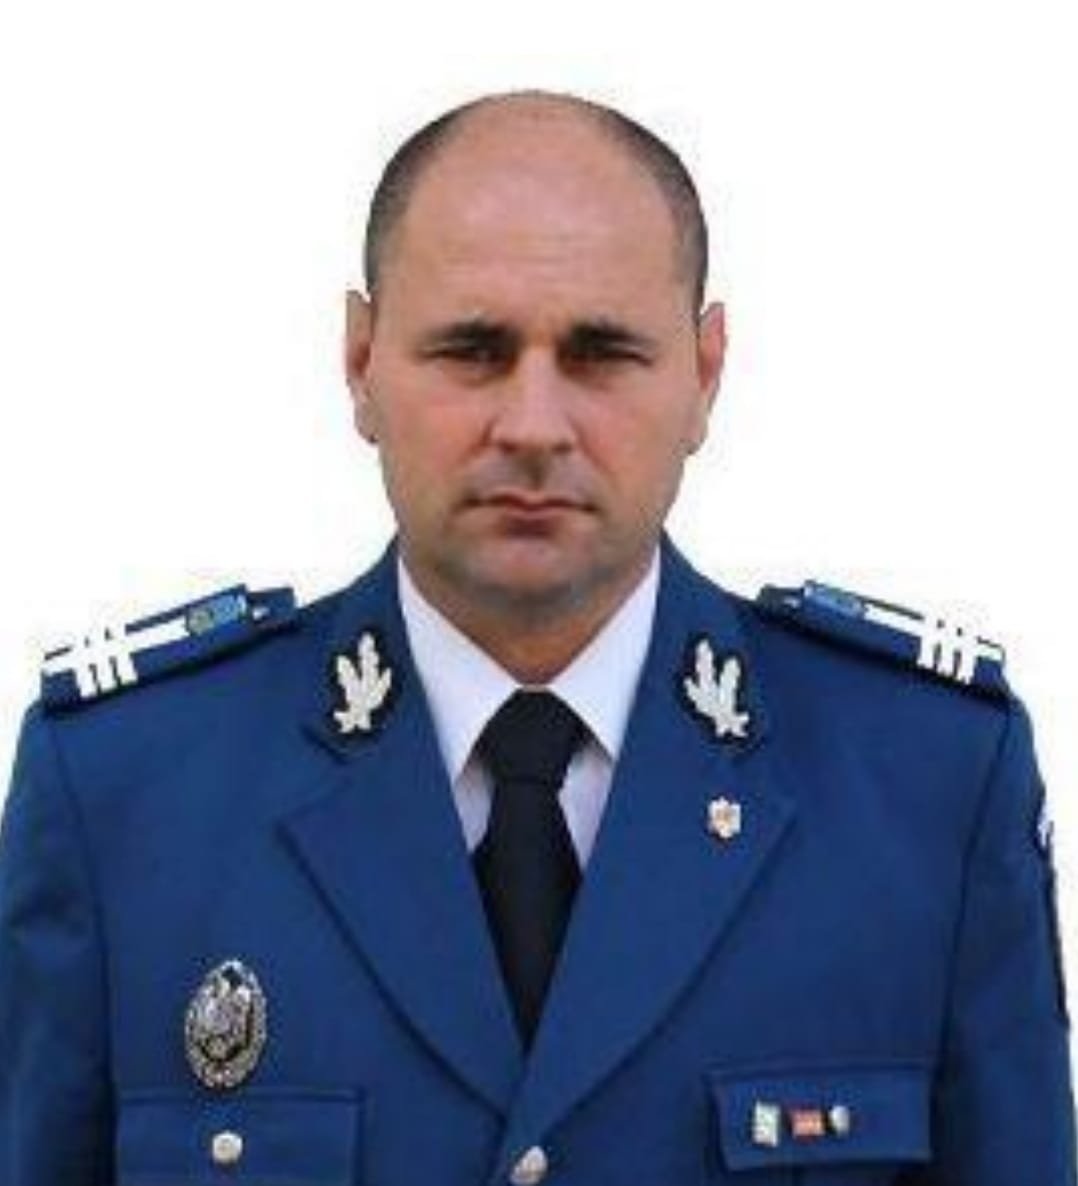  EXCLUSIV: Șeful Jandarmeriei Iași, Mircea Tulică, vrea să plece din funcție